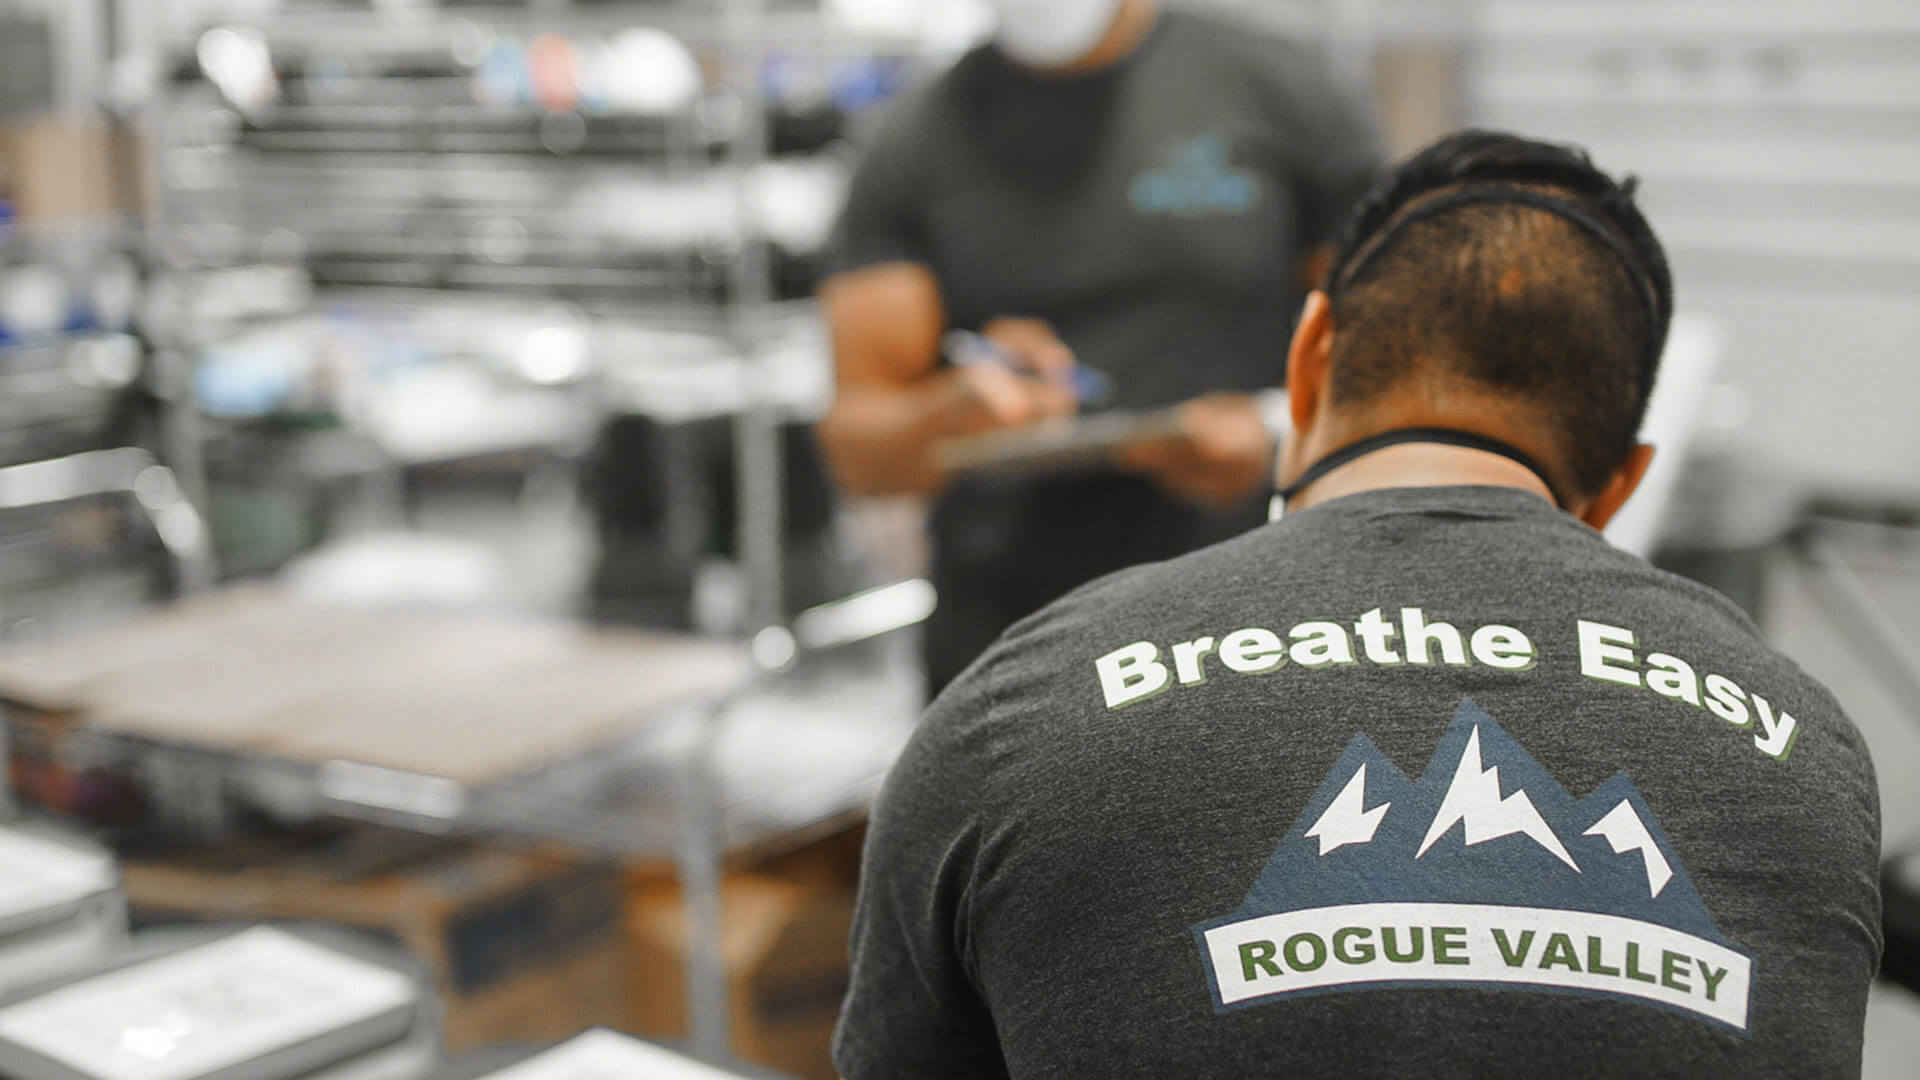 Rogue Valley Breathe Easy program